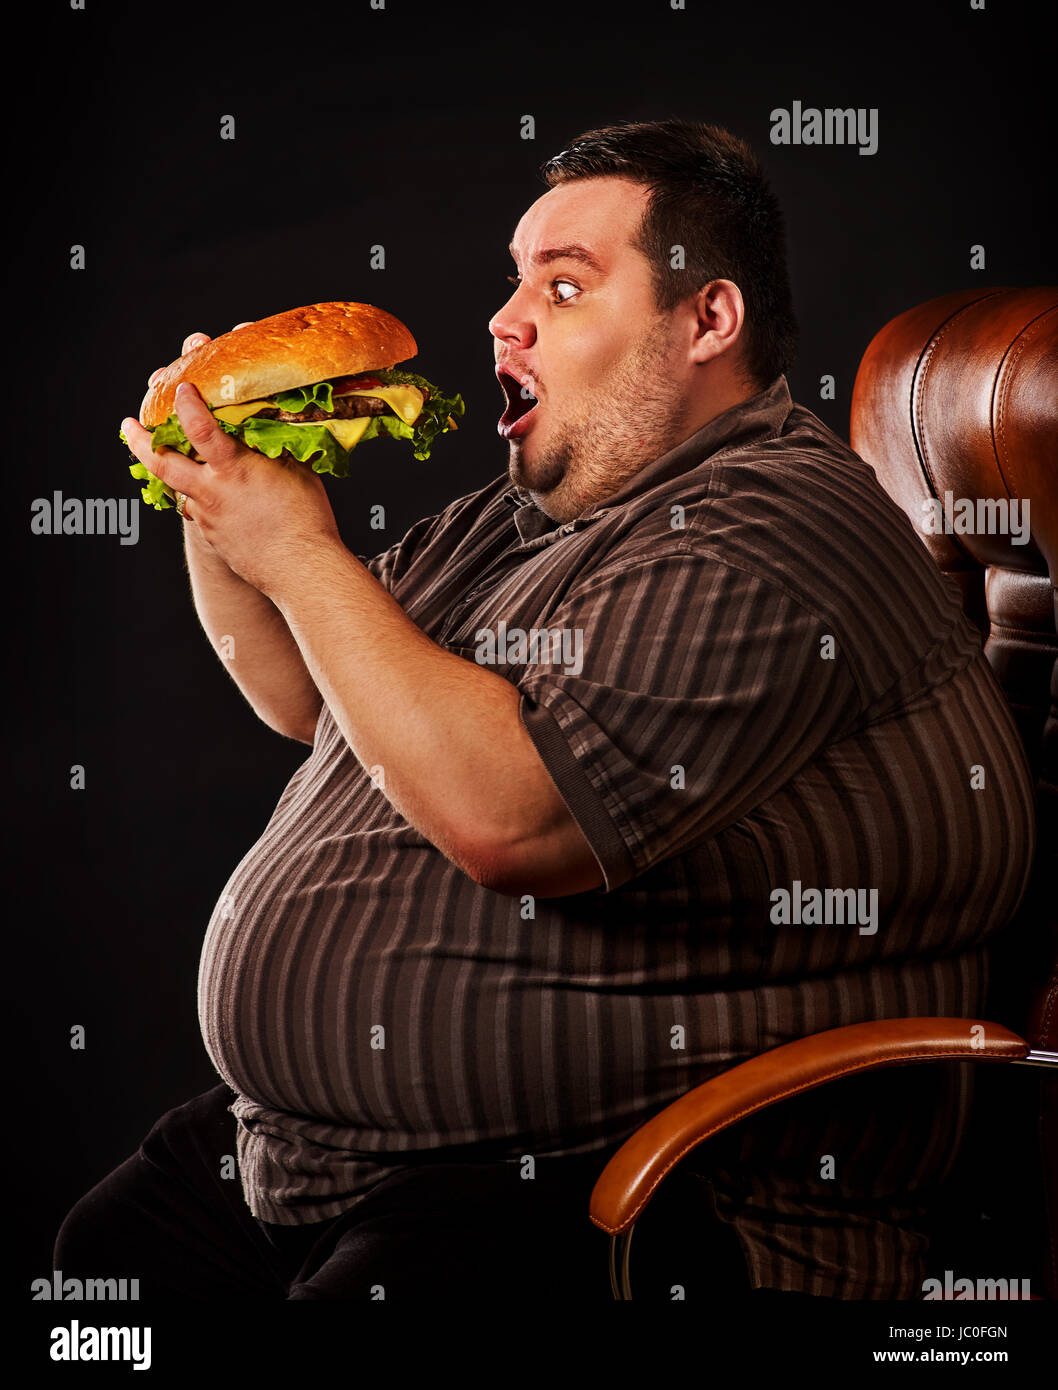 Diät Scheitern der dicke Mann essen Fastfood Hamberger. Glücklich übergewichtige gesunde Ernährung von riesigen Hamburger gierig Essen verwöhnt. Junk-e-Mahlzeit führt zu Stockfoto